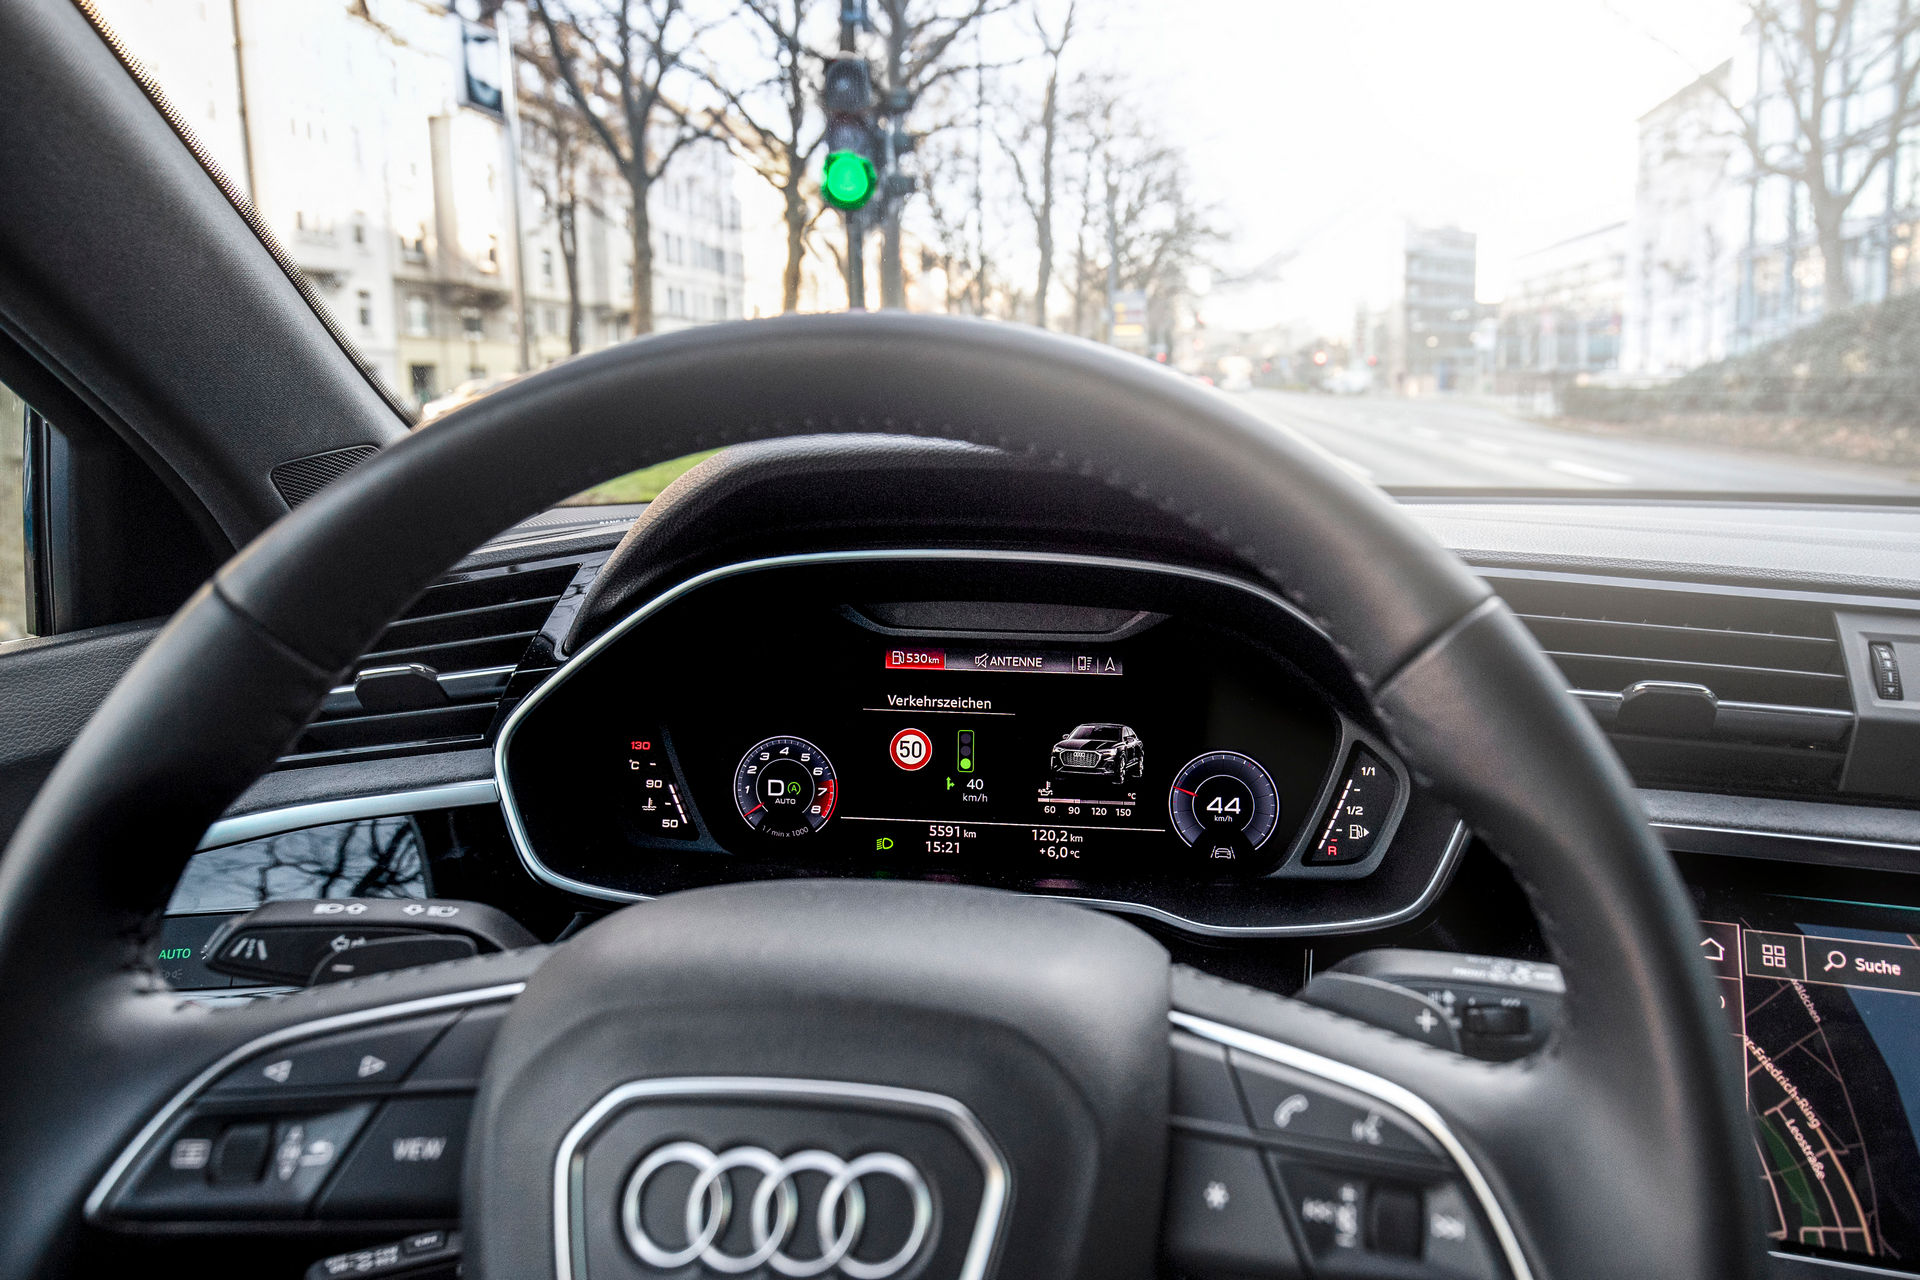 سيارات اودي تبدأ بالتواصل مع إشارات المرور في ألمانيا! 35